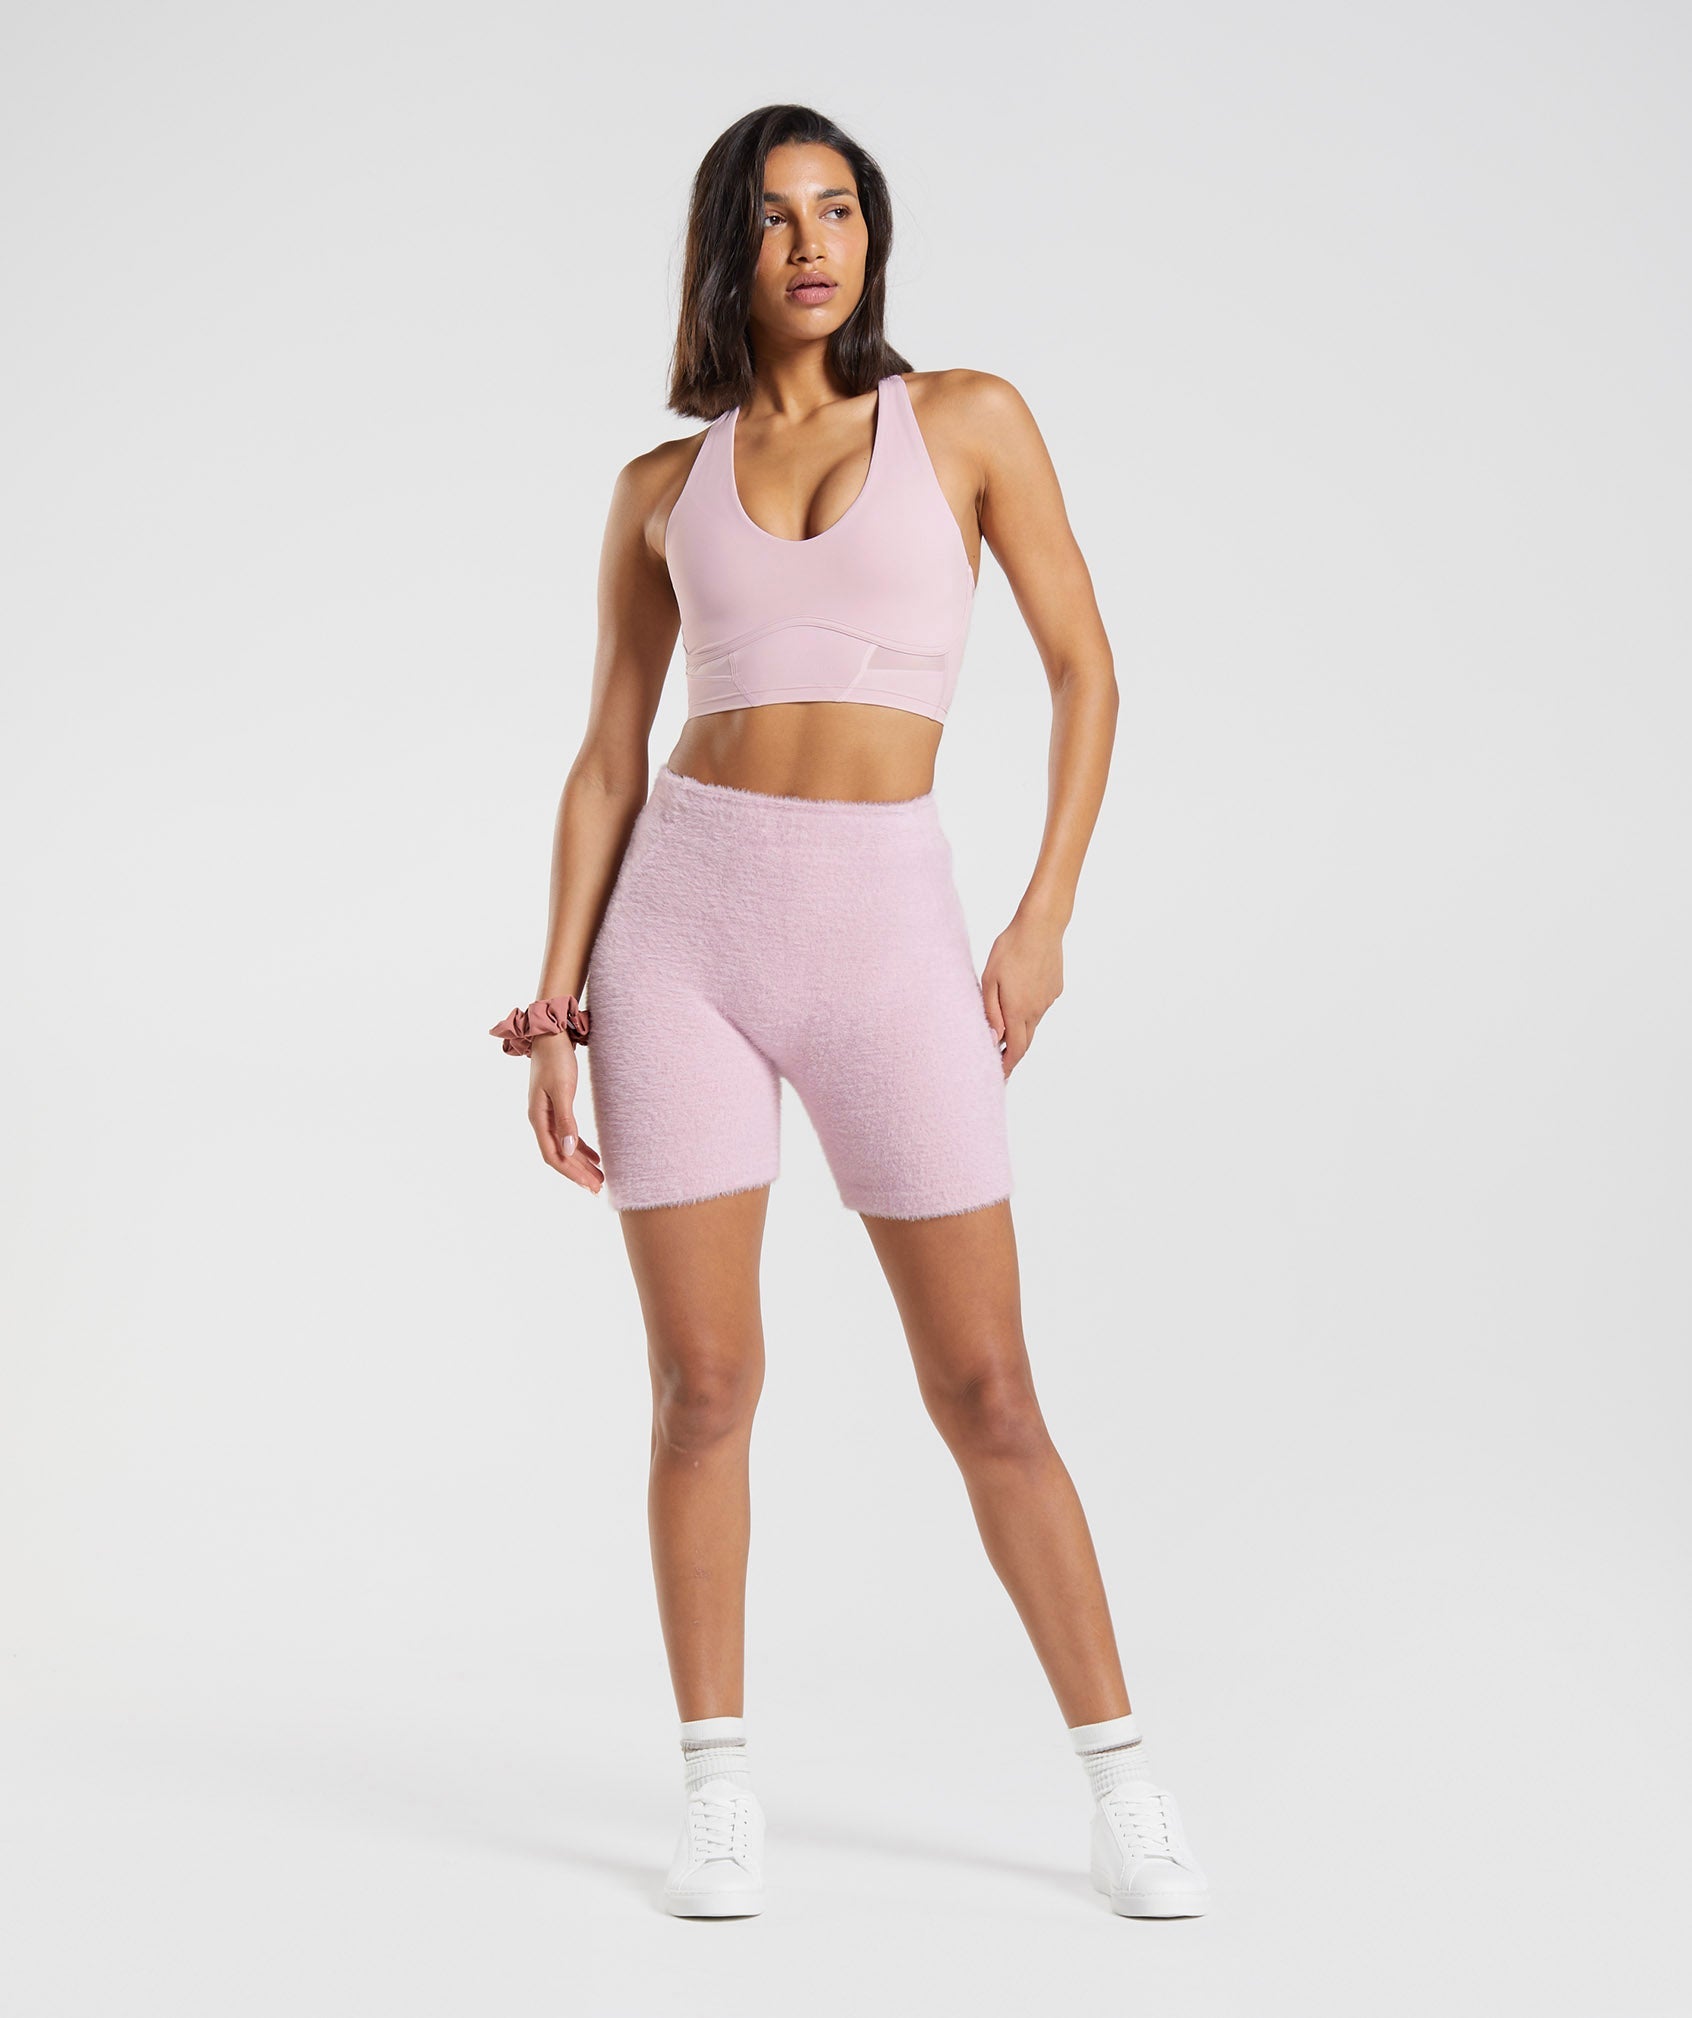 Gymshark Whitney Short Sleeve Crop Top - Pressed Petal Pink